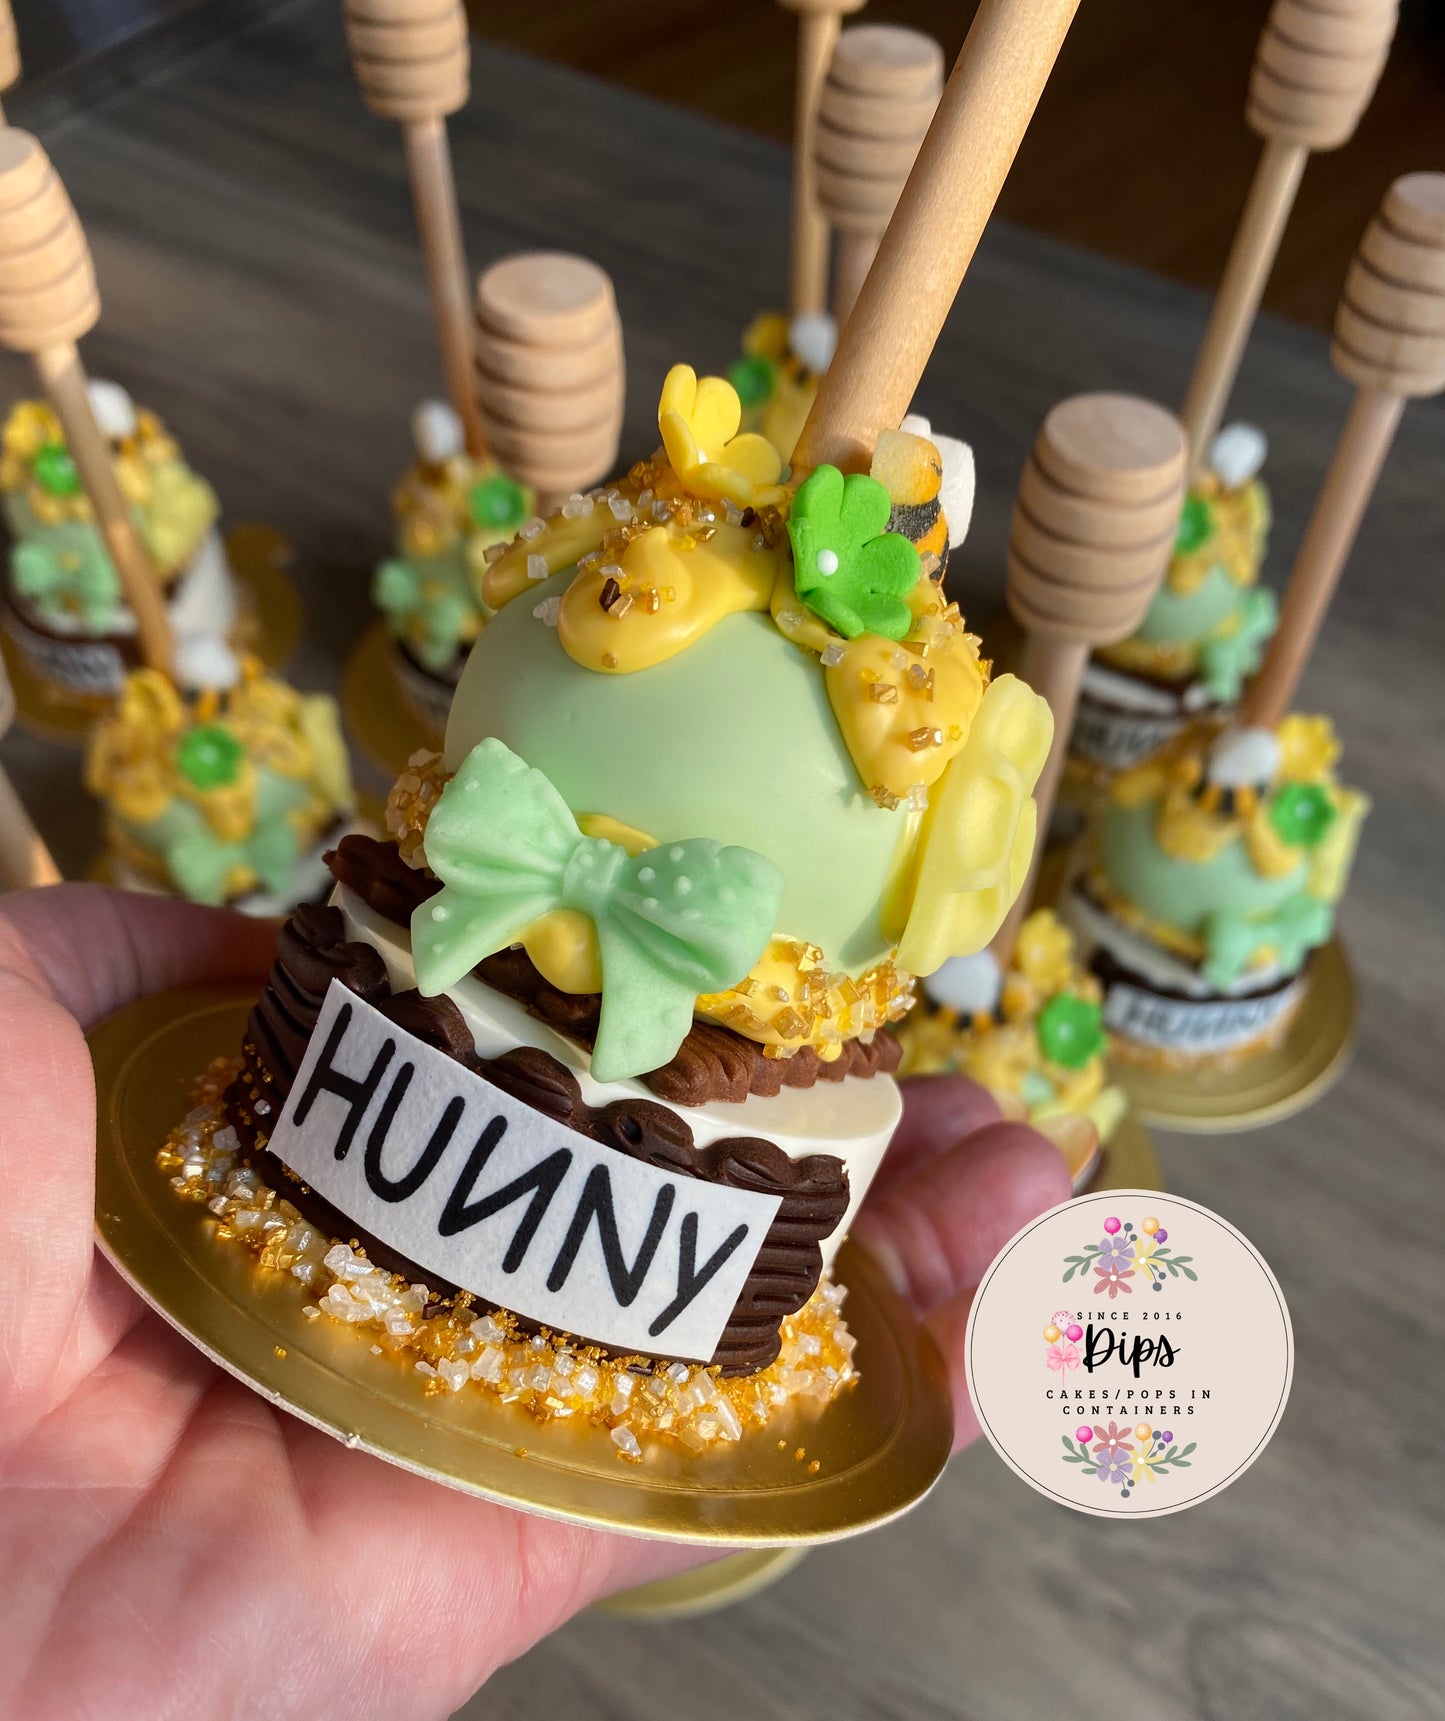 Hunny Pot Cake pop/Oreo Combo Treats